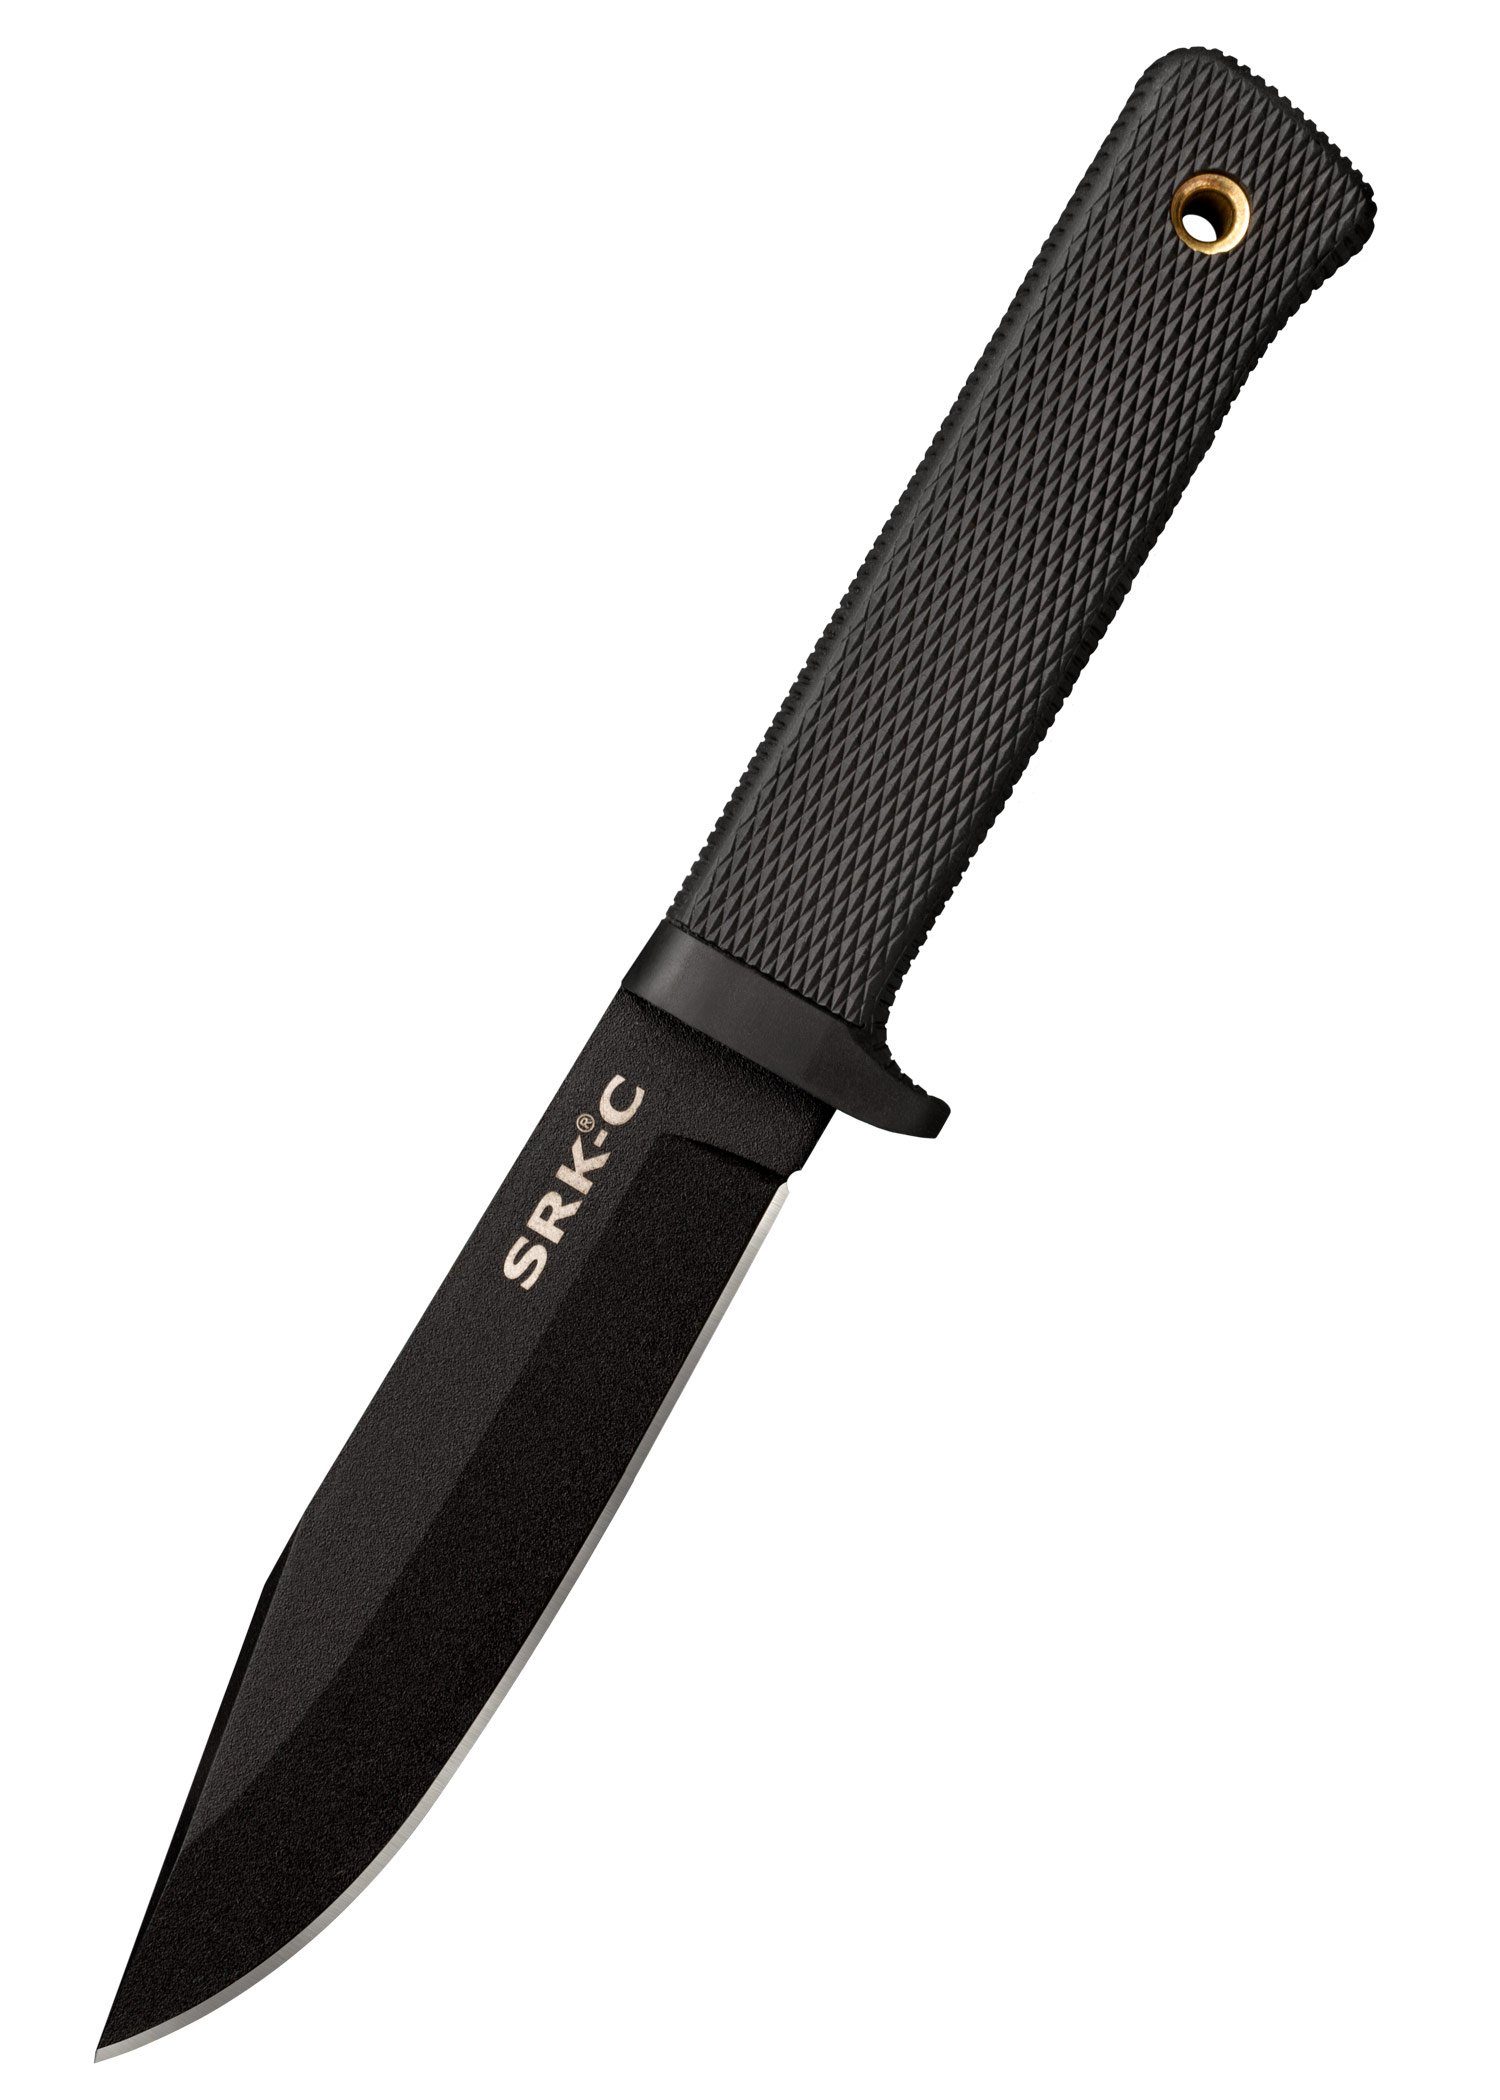 Steel Messer Survival mit feststehendes Knife Rettungsmesser SRK Compact Scheide Cold Steel Cold